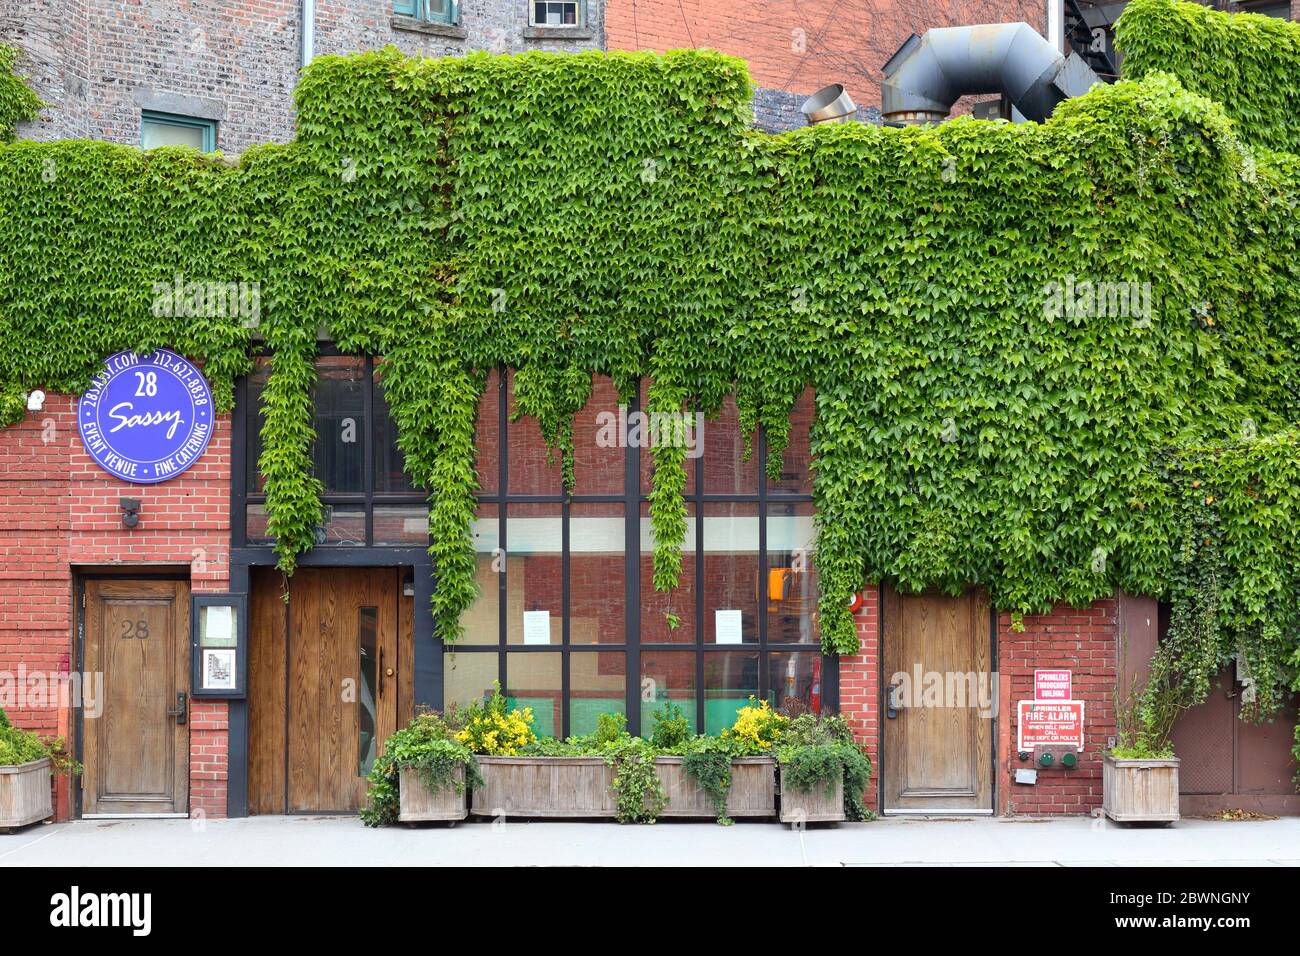 28 Sassy, 28 7th Ave S, New York, NY. Außenfassade eines Veranstaltungsraums im Stadtteil Greenwich Village in Manhattan. Stockfoto